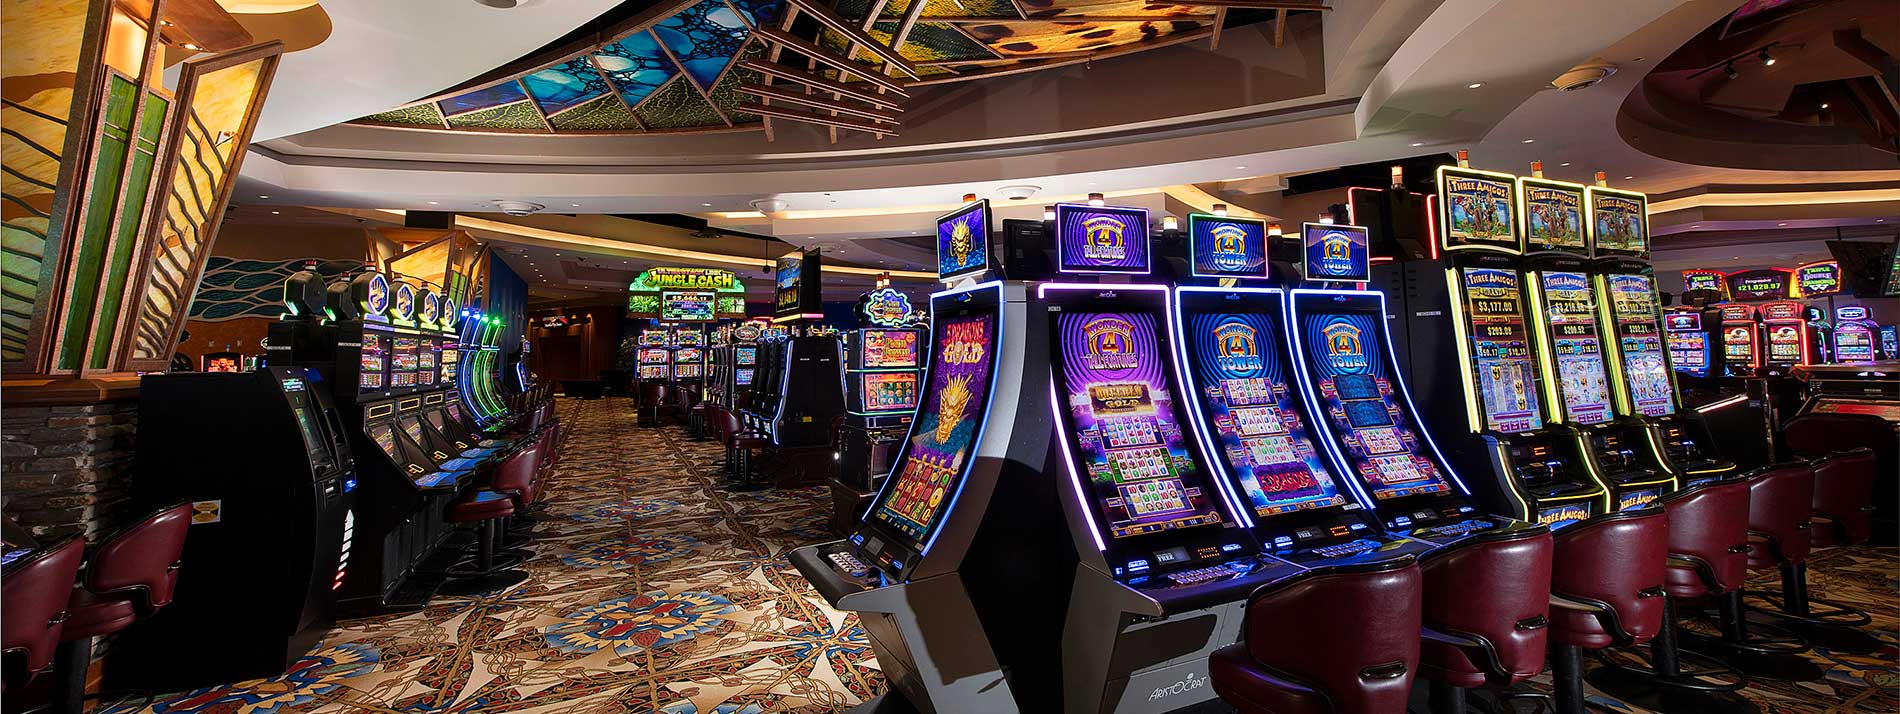 slot machines inside casino